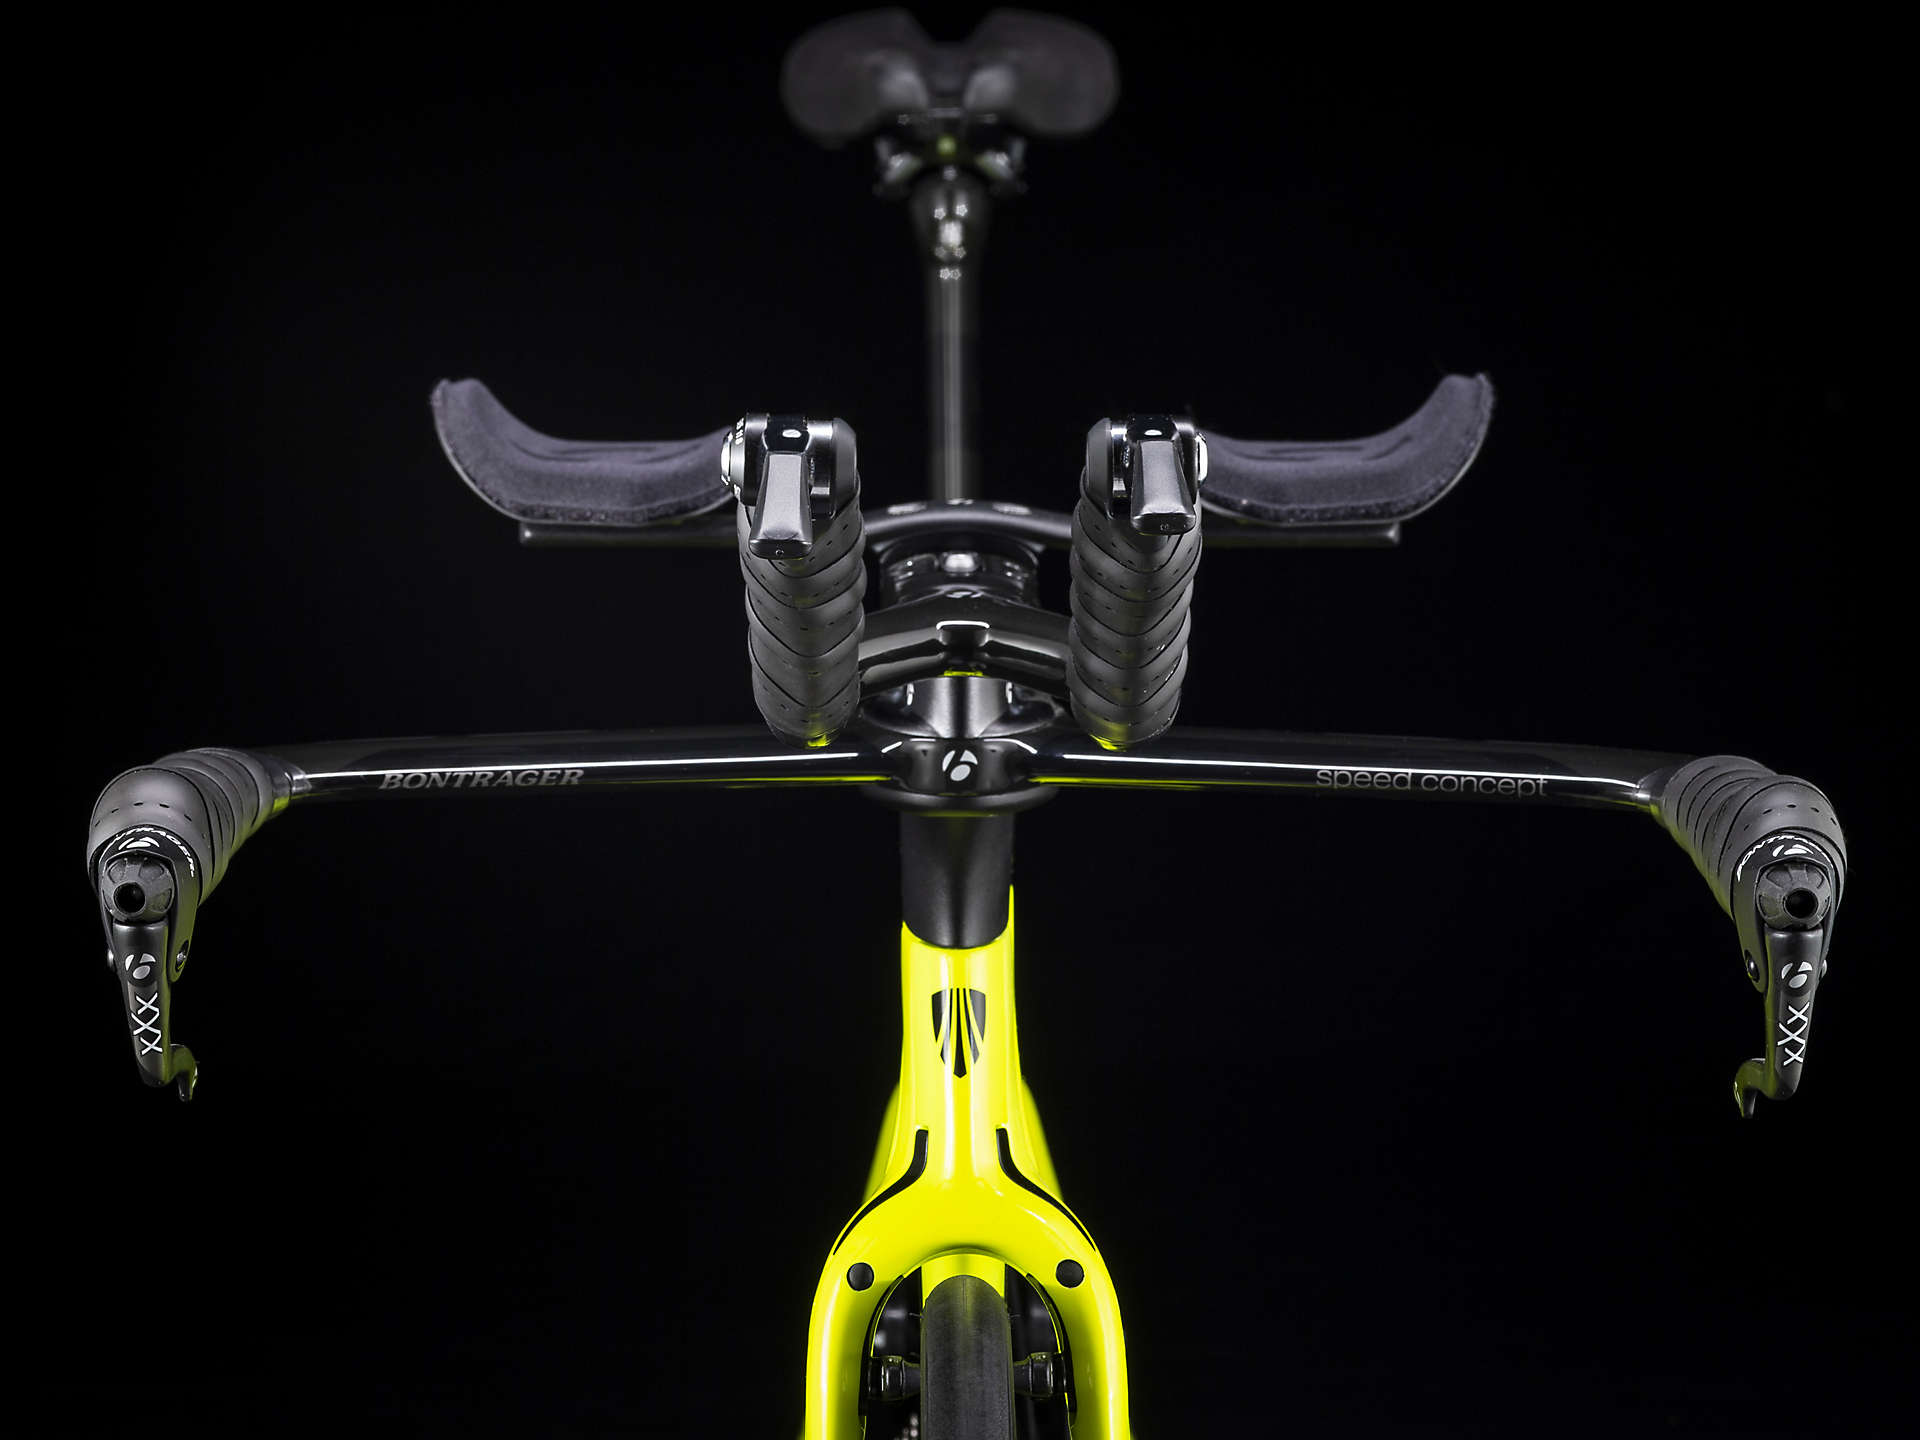 Rowery triatlonowe Trek dostępne w fabrykarowerów.com - dobór rozmiaru i komponentów  tylko z fizjoterapeutą!